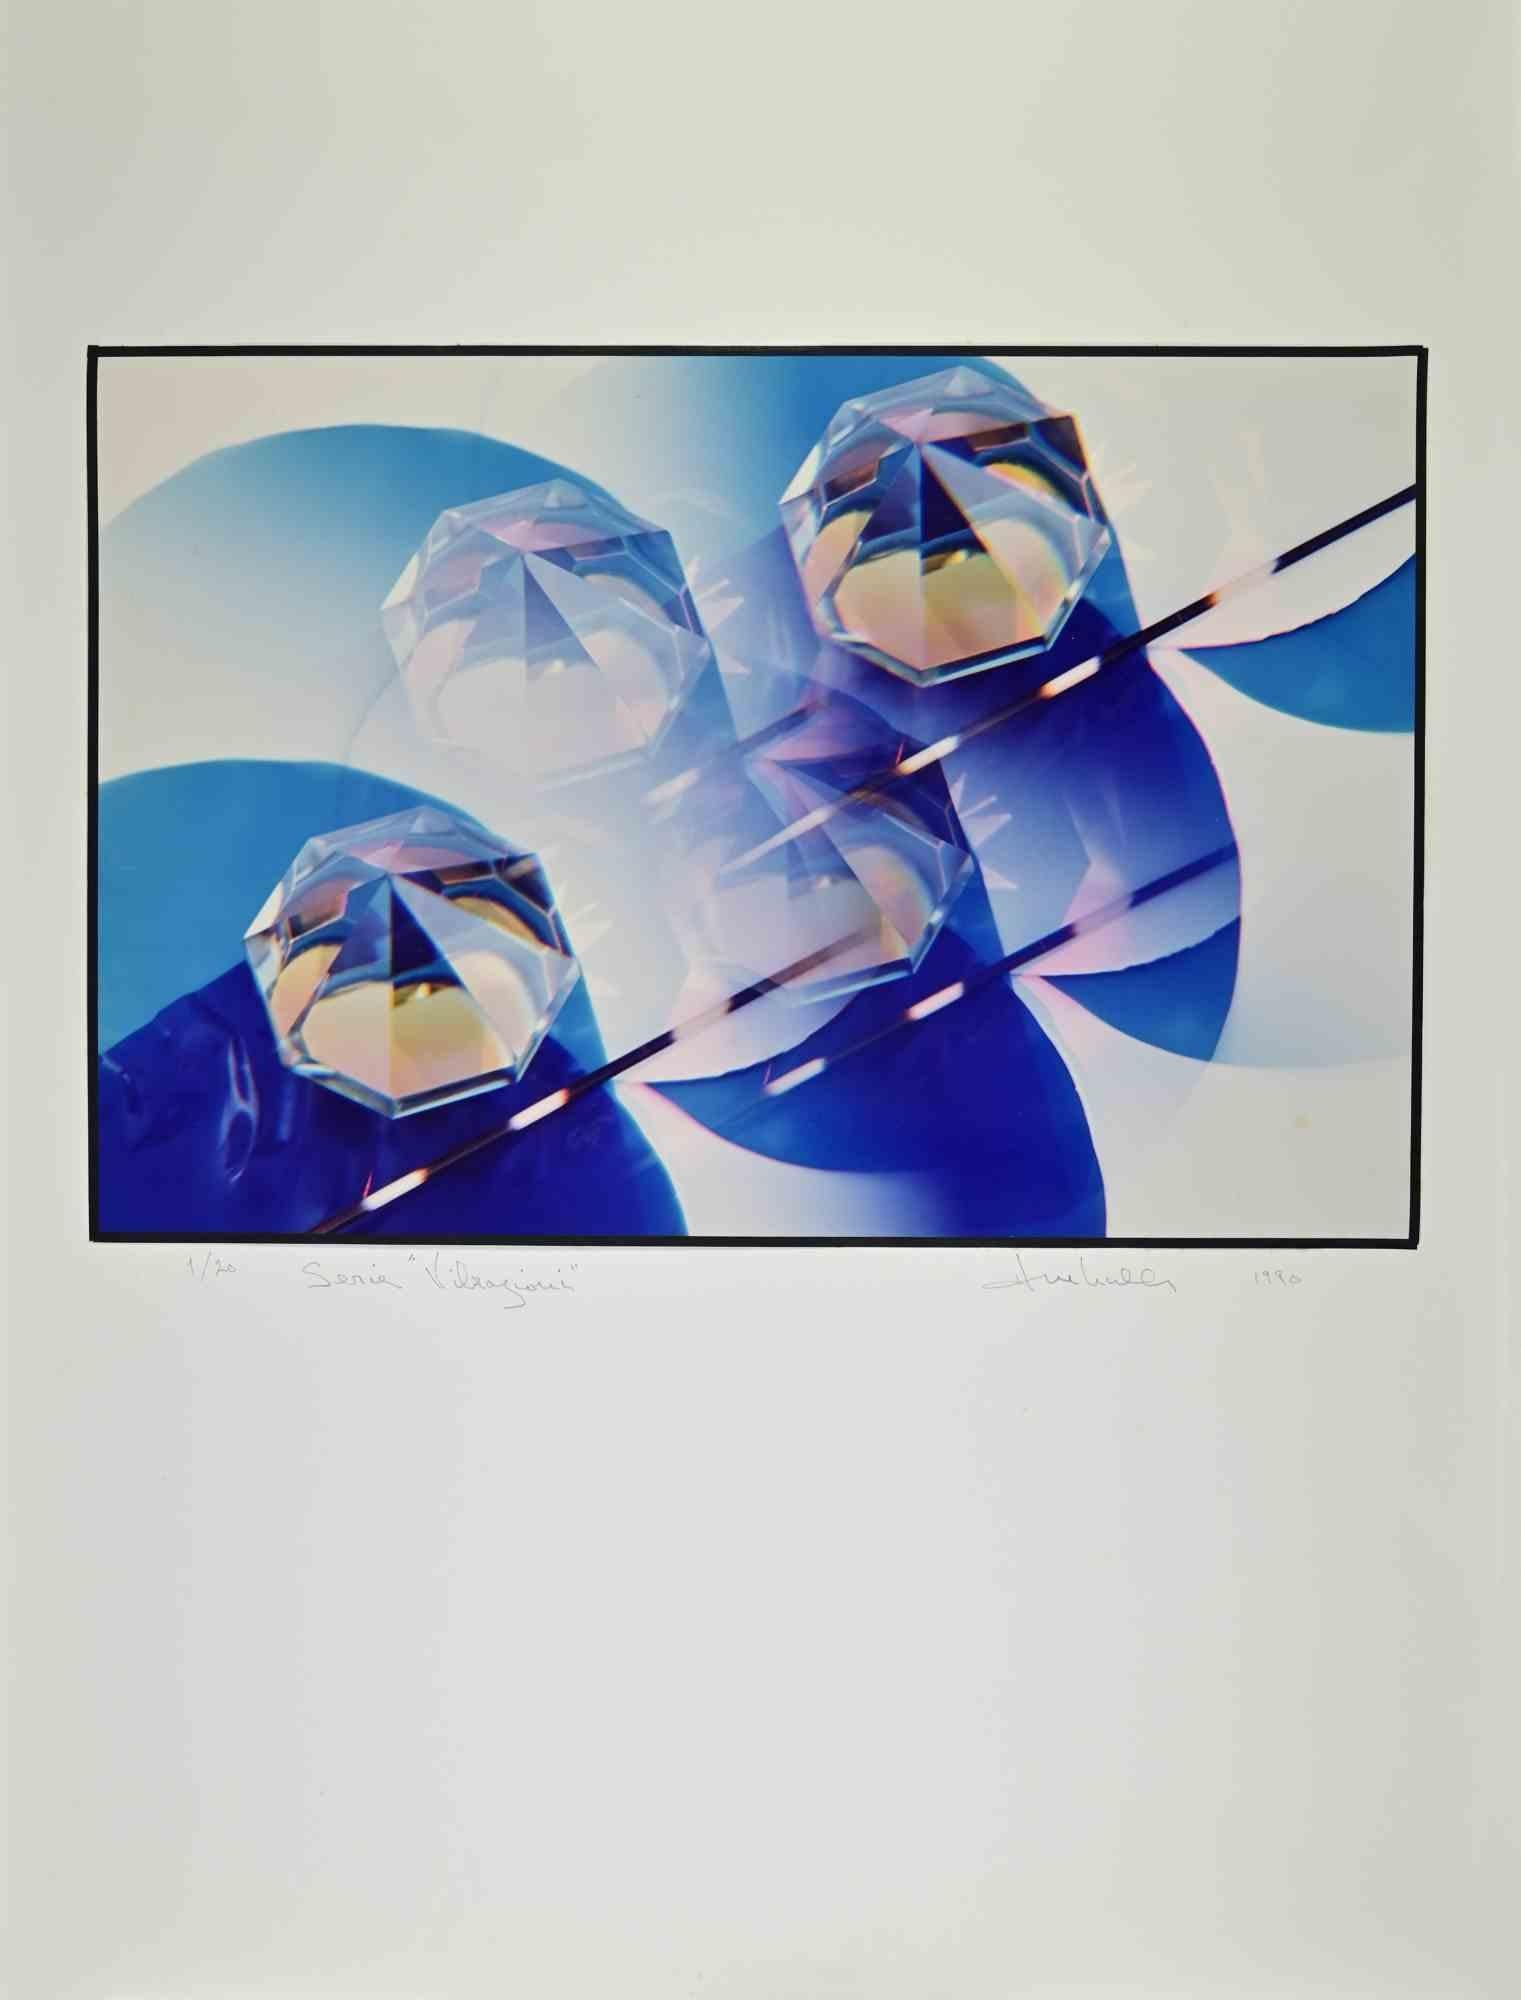 Print Harold Miller Null - Impression d'exposition de Vibrazioni par Miller Null - Photographie vintage - 1990